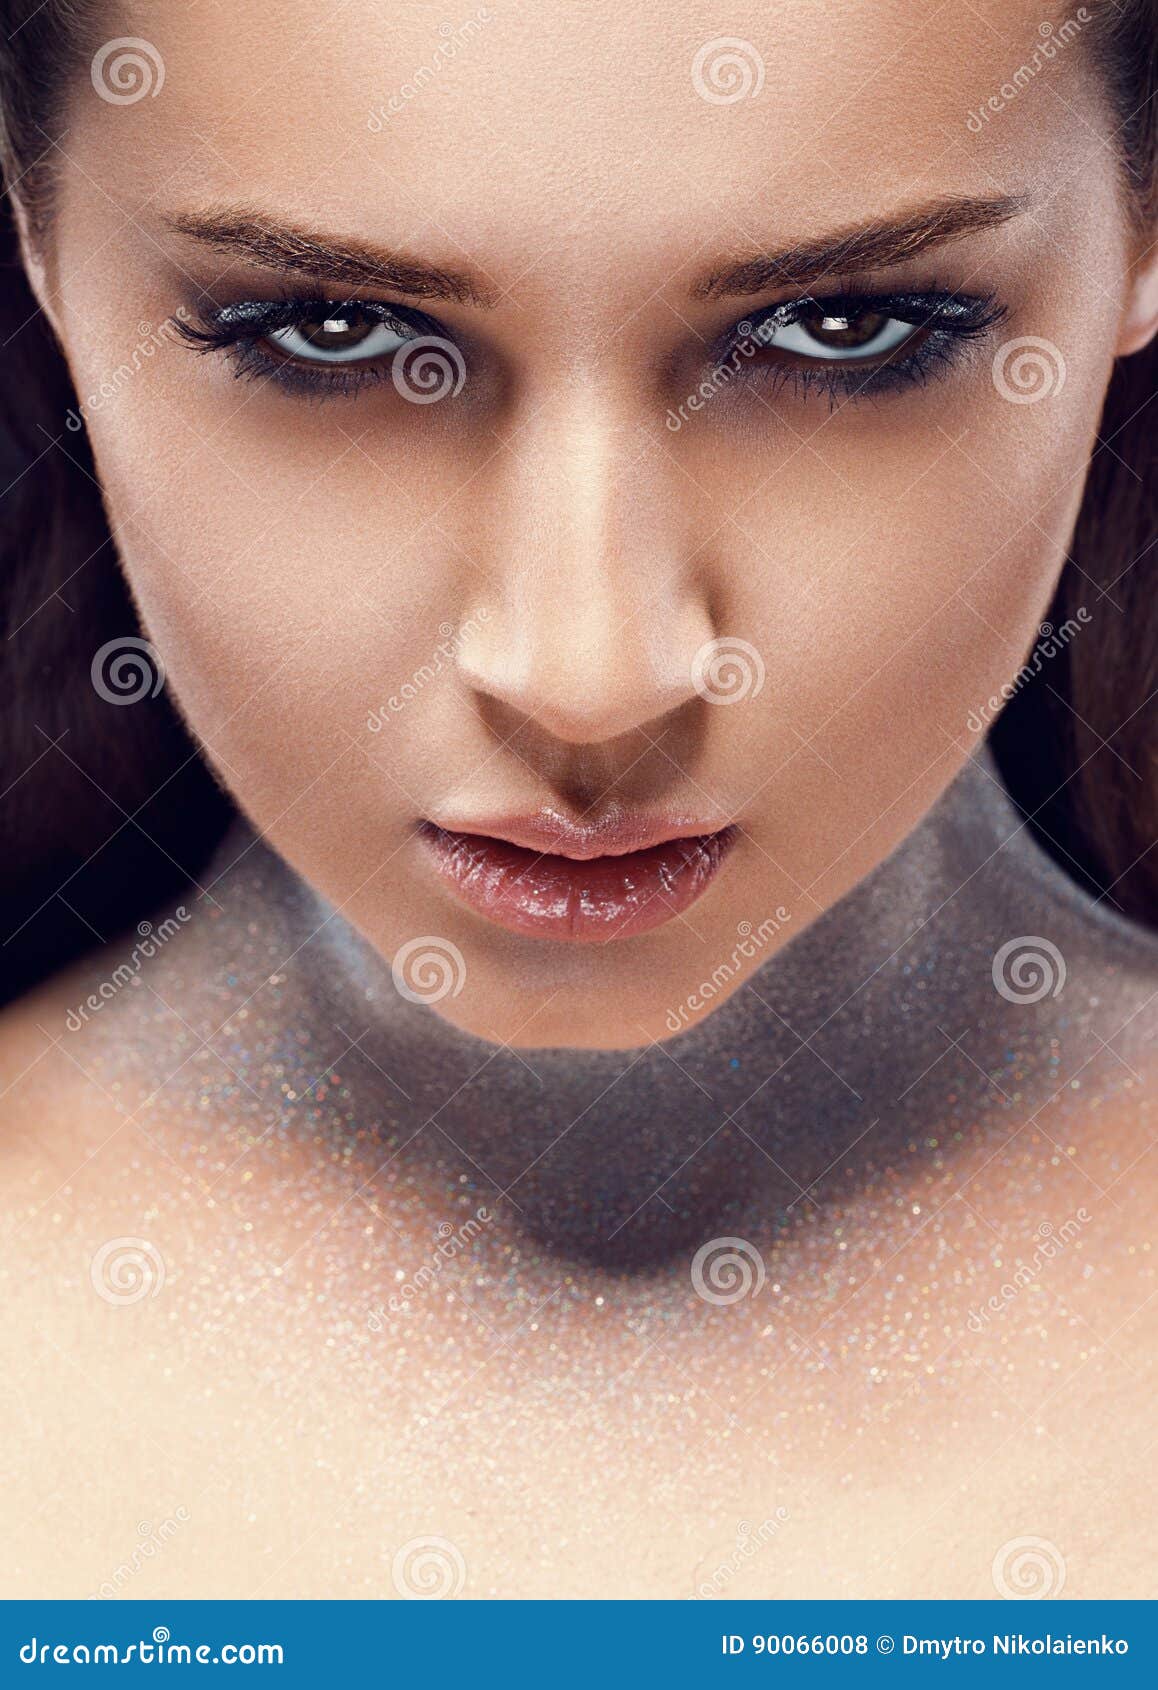 large glamorous woman facial comp